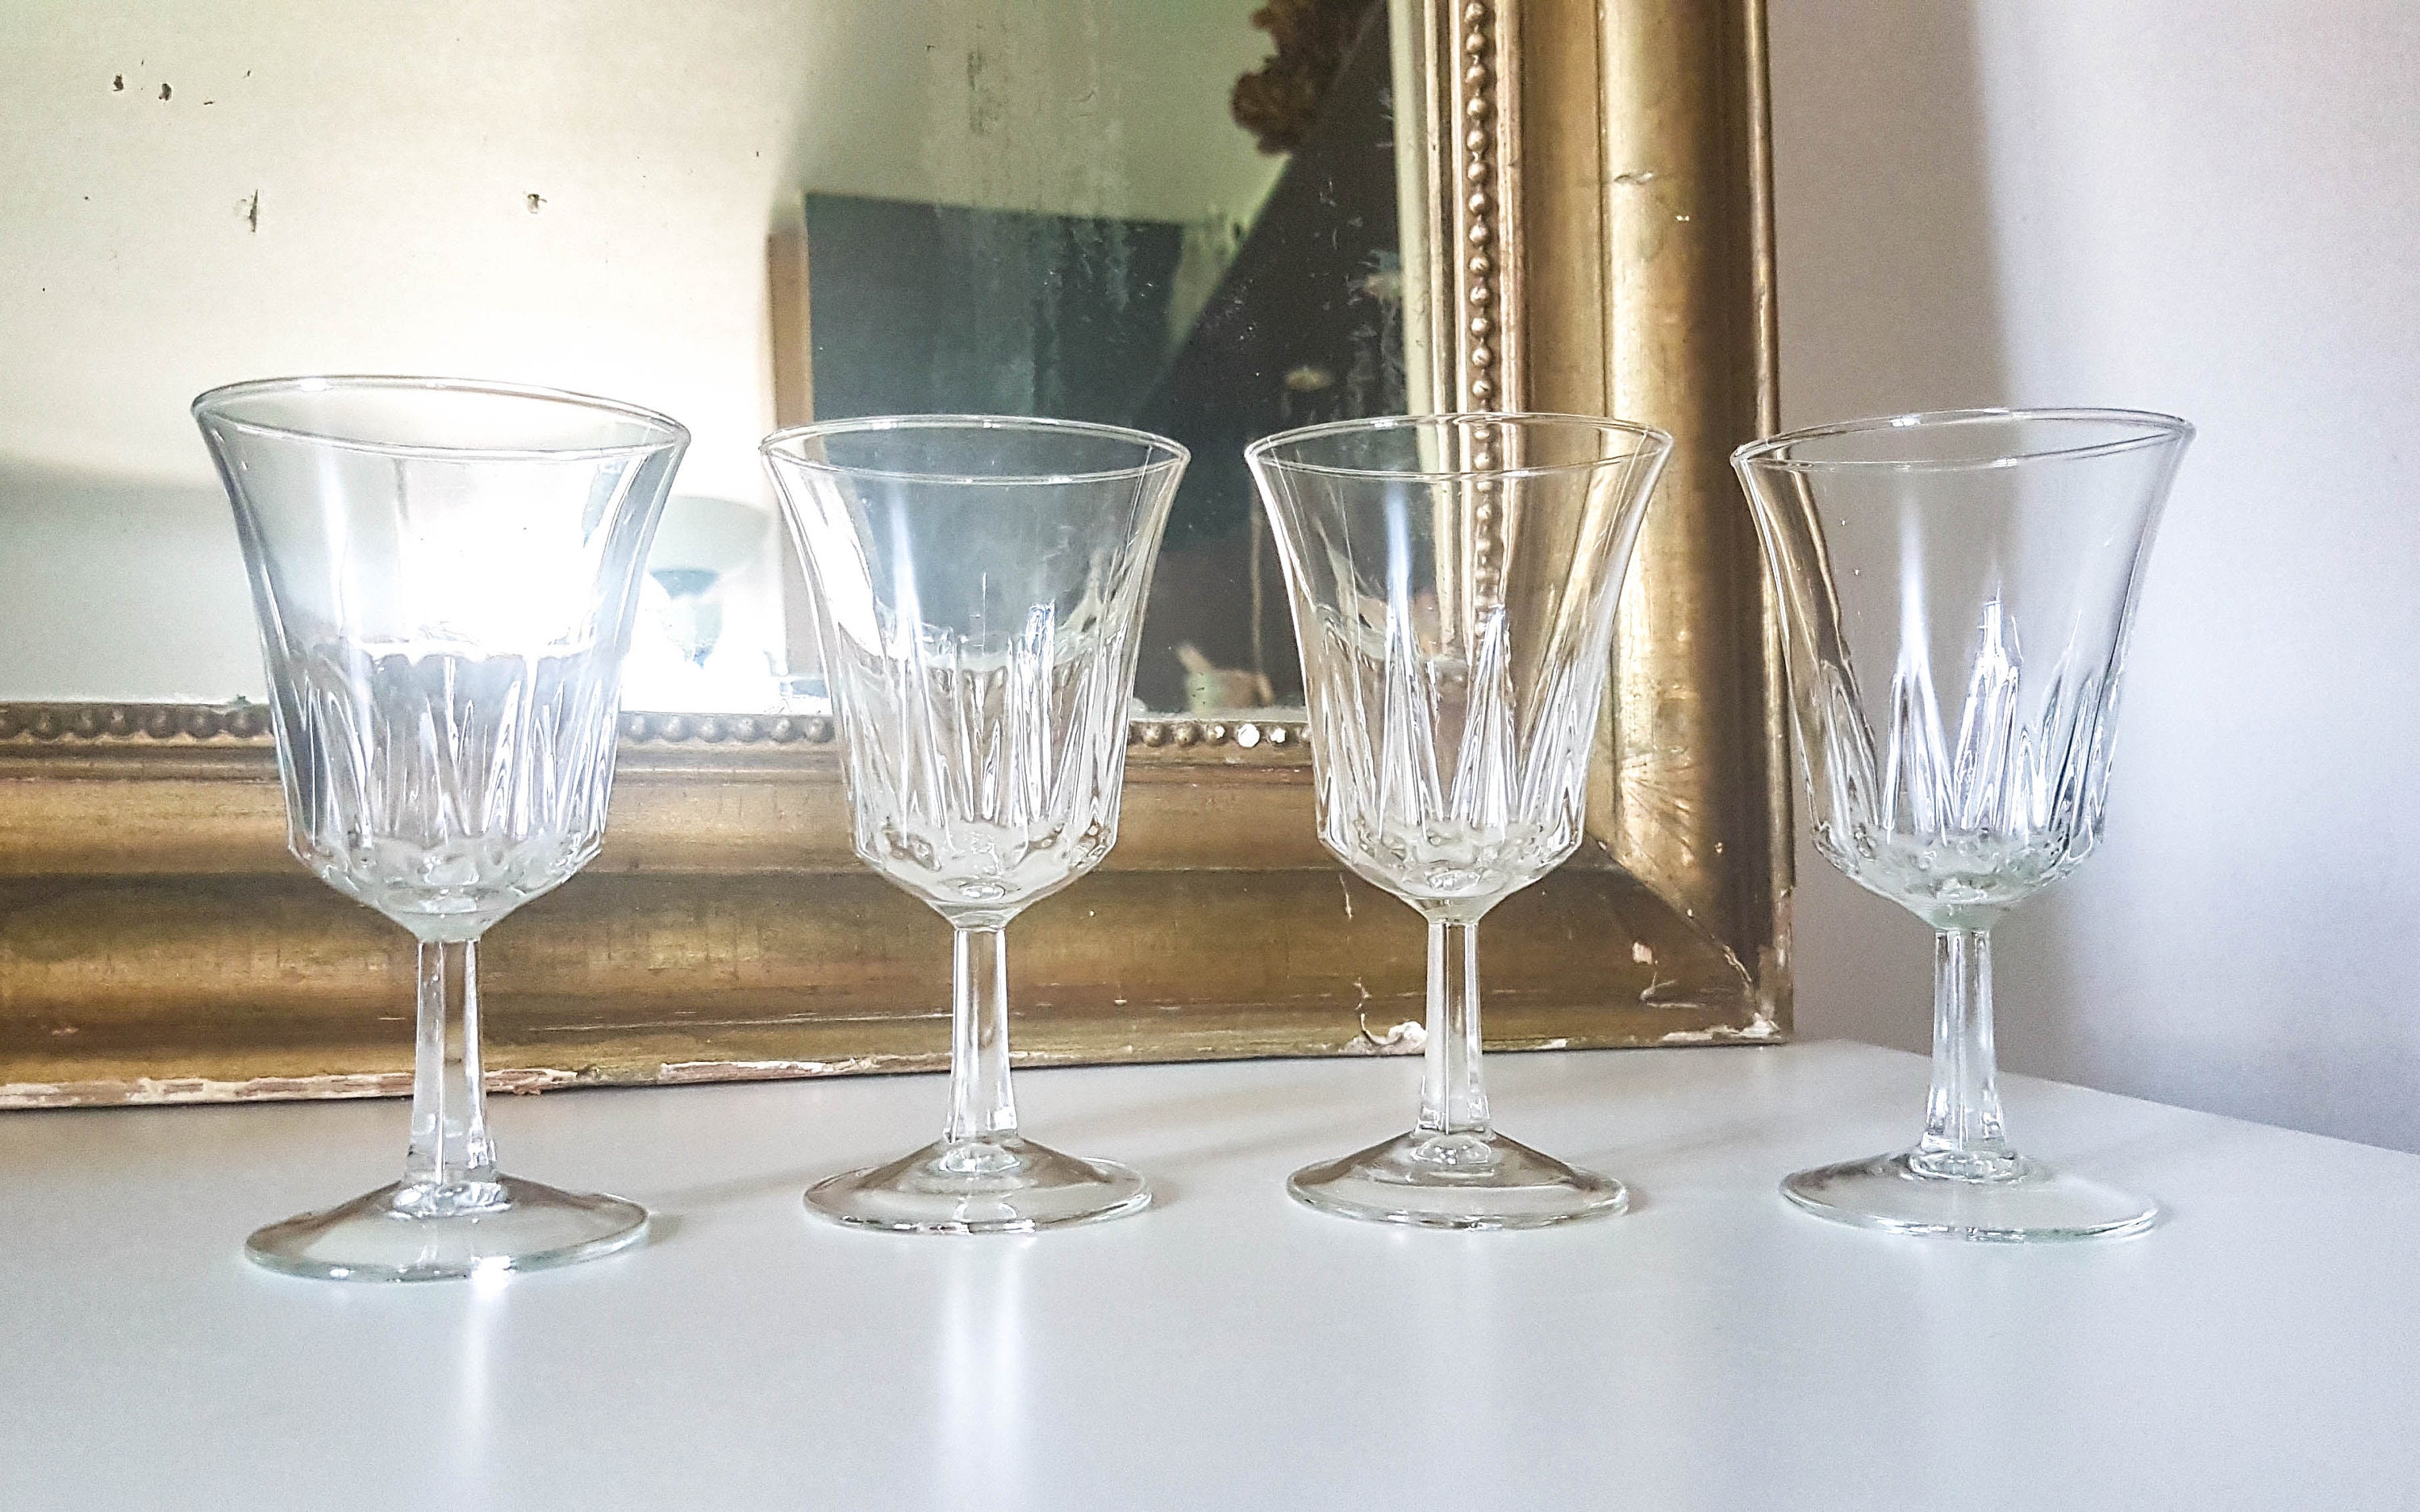 4 Verres Vintages Cristal d'arques Modèle Régence ~ Verre à Vin Pied Vaisselle Vintage Made in Franc